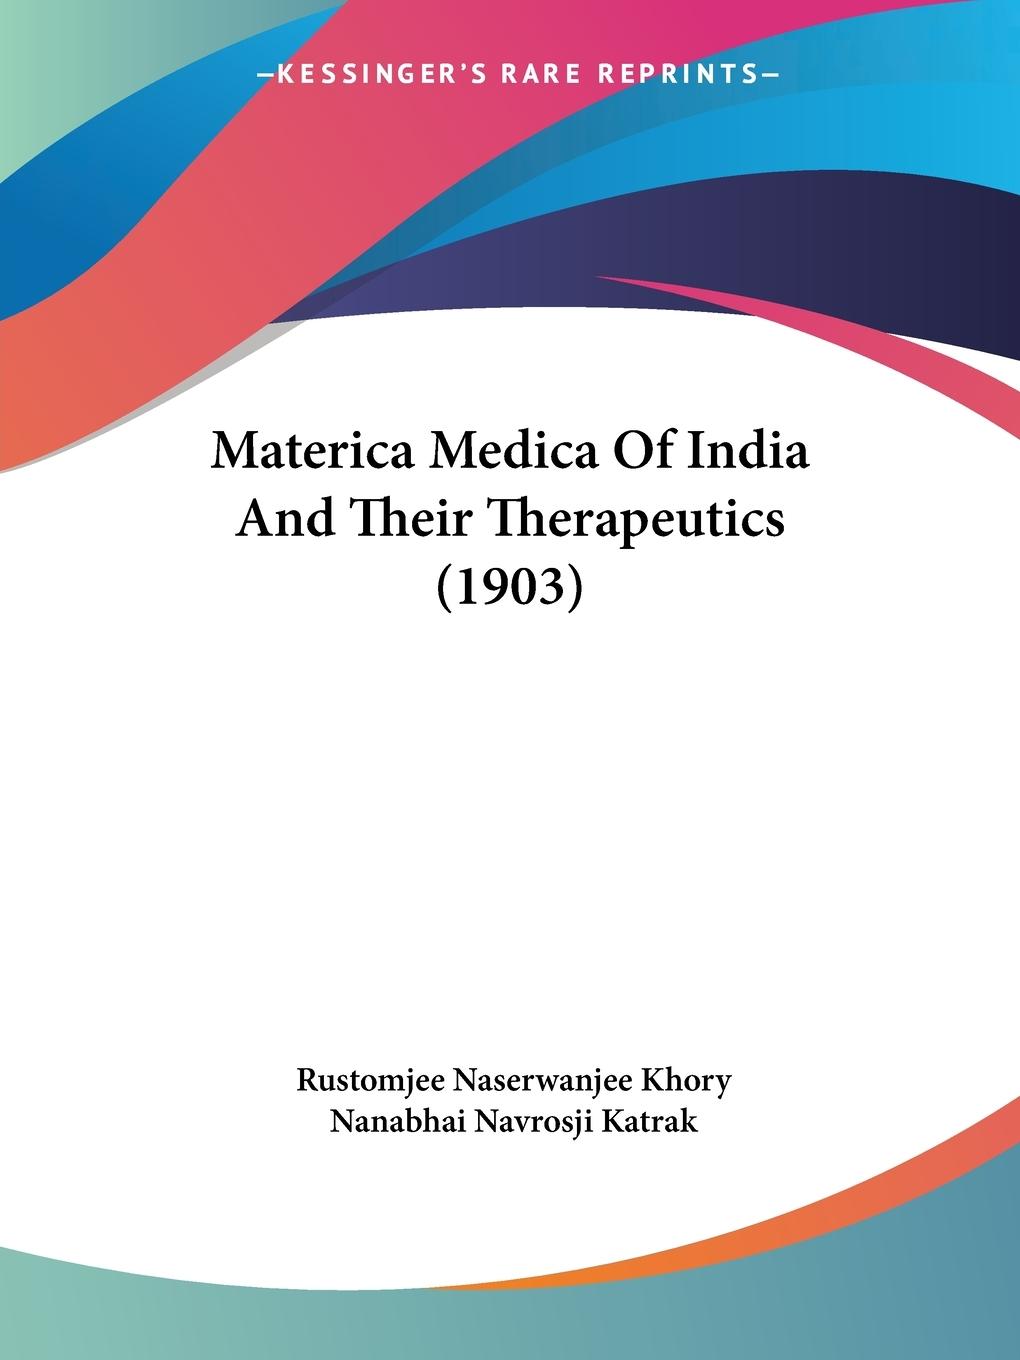 Materica Medica Of India And Their Therapeutics (1903) - Khory, Rustomjee Naserwanjee Katrak, Nanabhai Navrosji